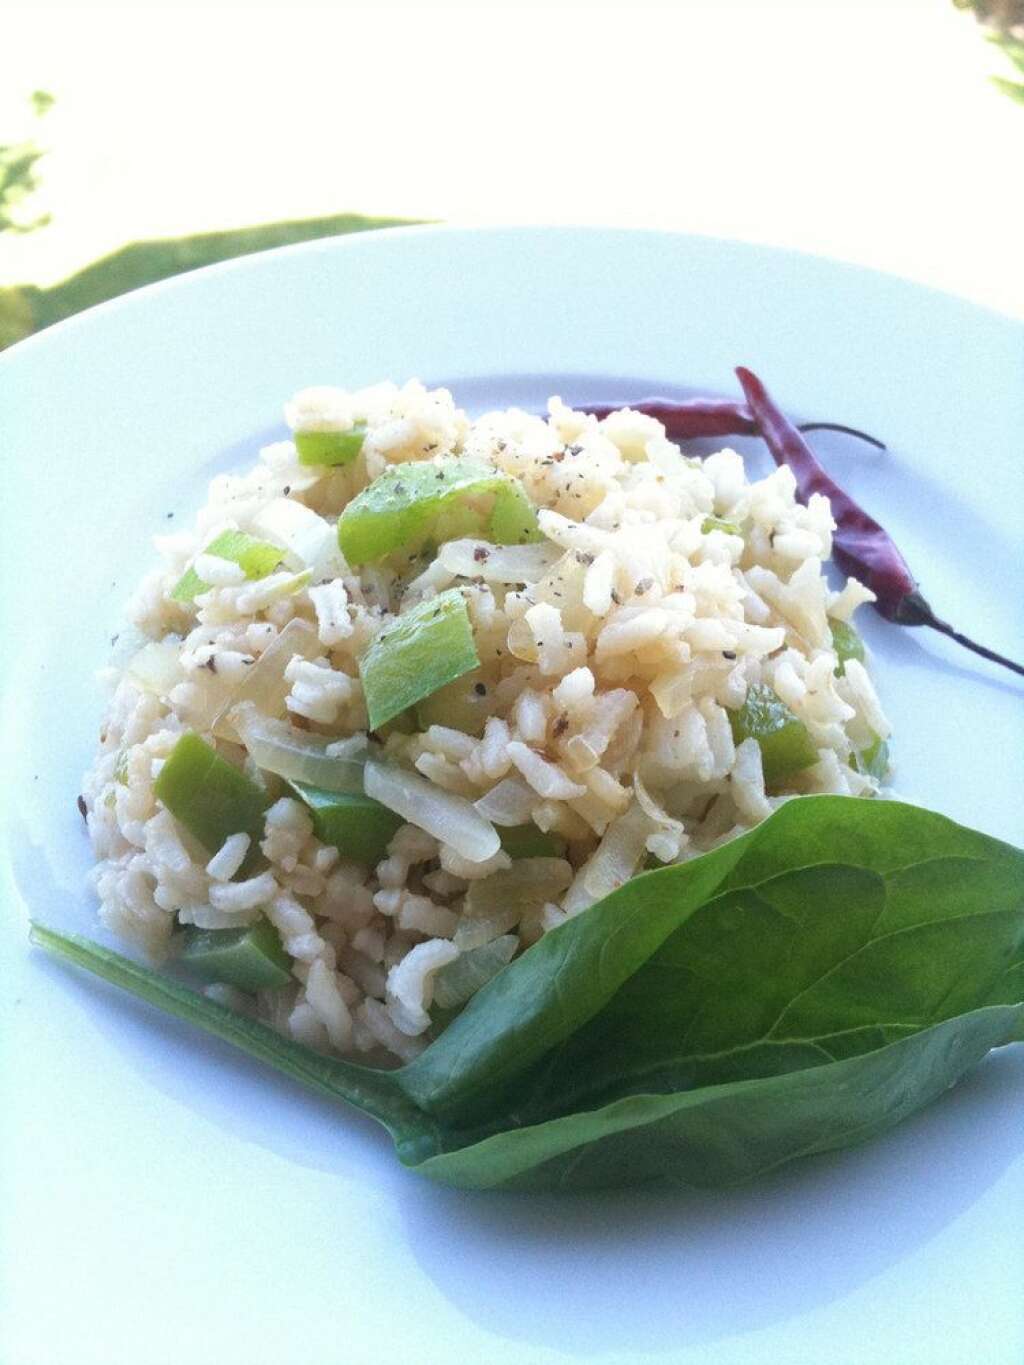 Le riz complet - C'est aussi un aliment riche et sain.